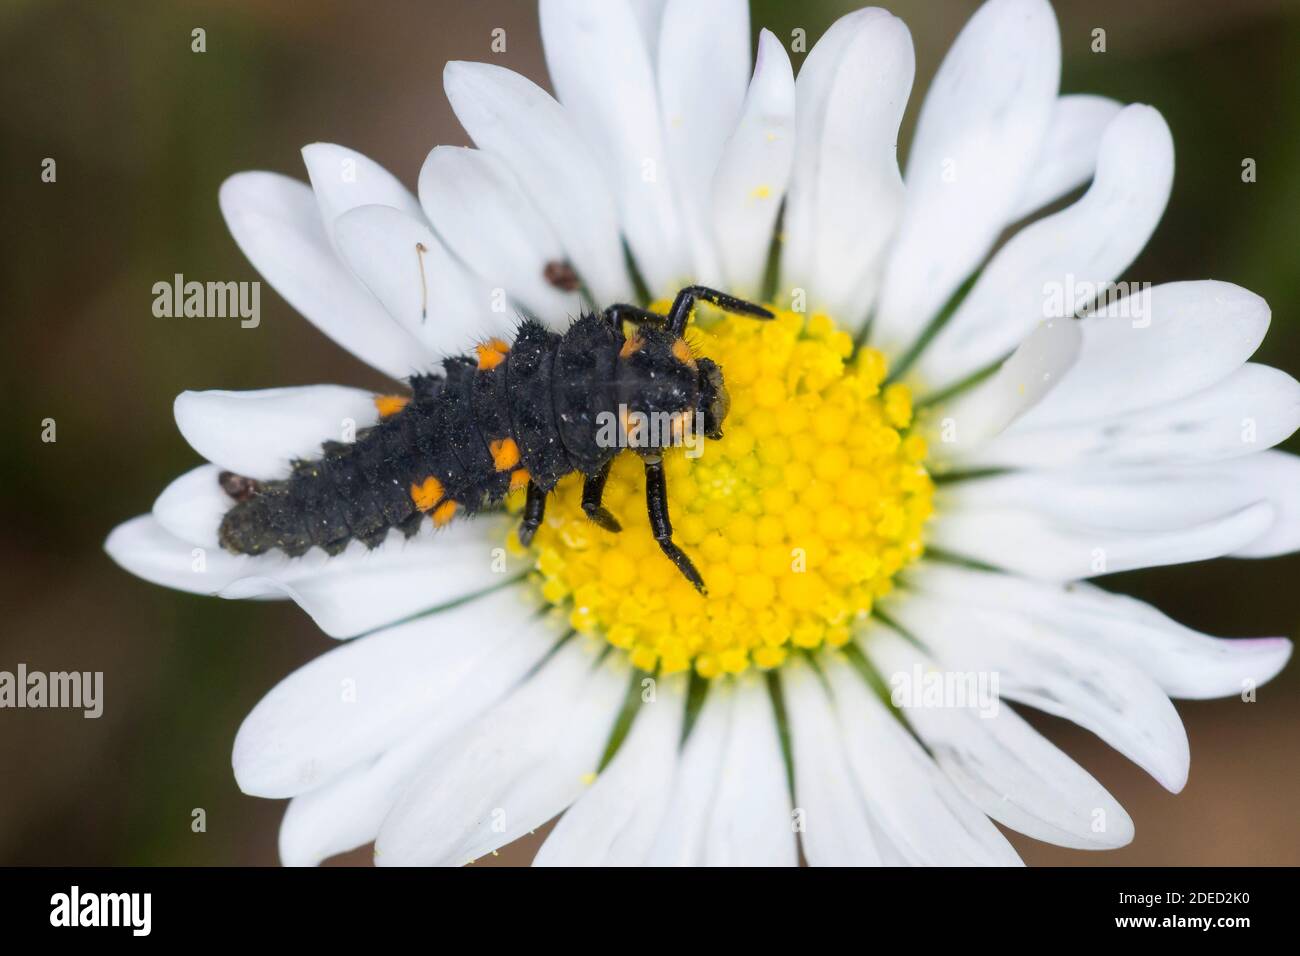 Marienkäfer mit sieben Flecken, Marienkäfer mit sieben Flecken, Marienkäfer mit sieben Flecken (Coccinella septempunctata), Larve auf einer Gänseblümchen, Deutschland Stockfoto